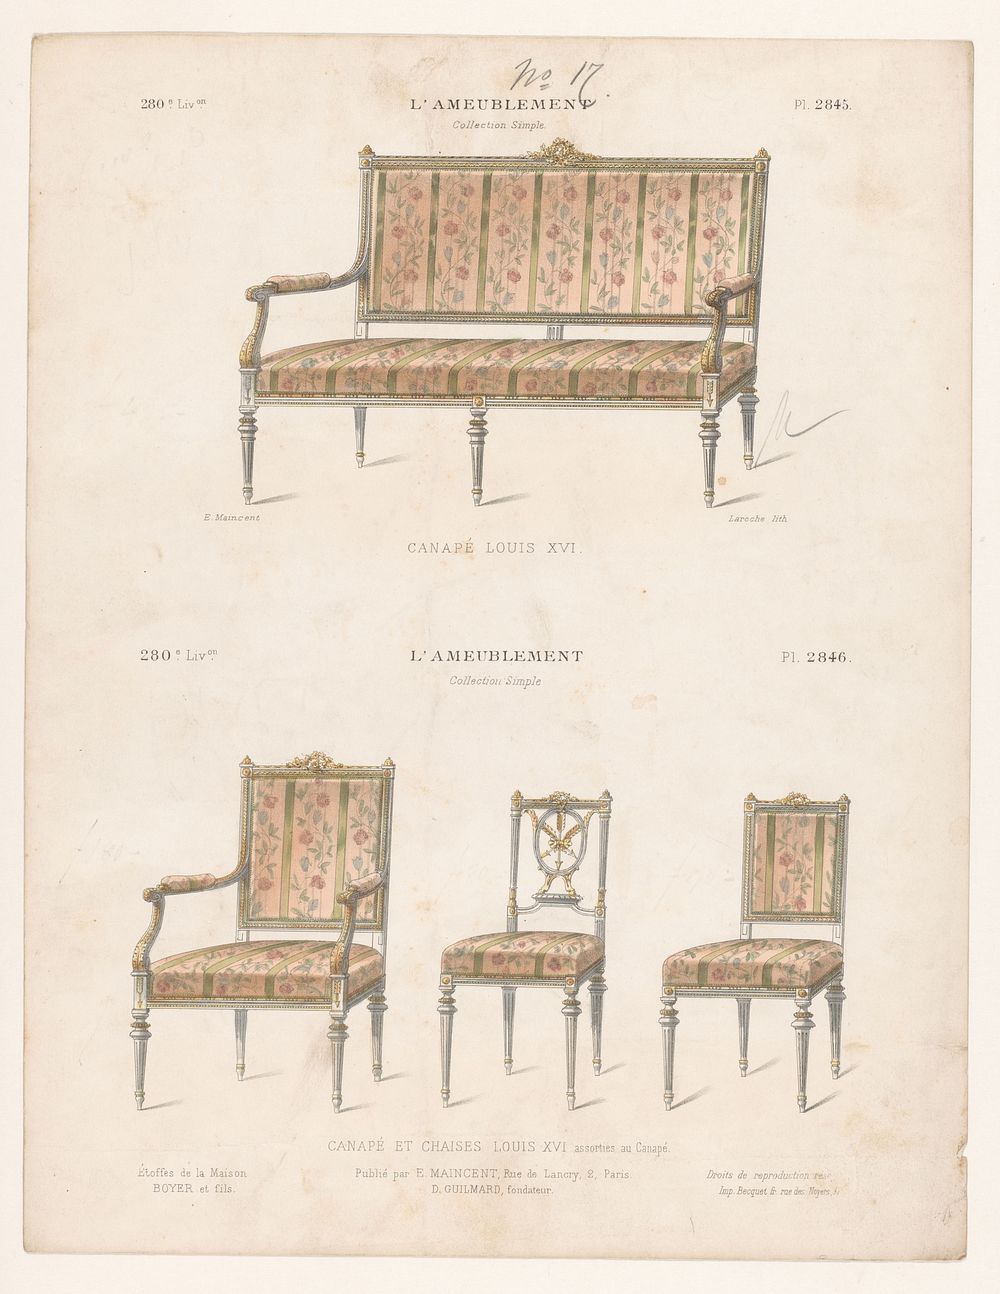 Canapé en drie stoelen (1885 - 1895) by Léon Laroche, Becquet frères, Eugène Maincent and Désiré Guilmard